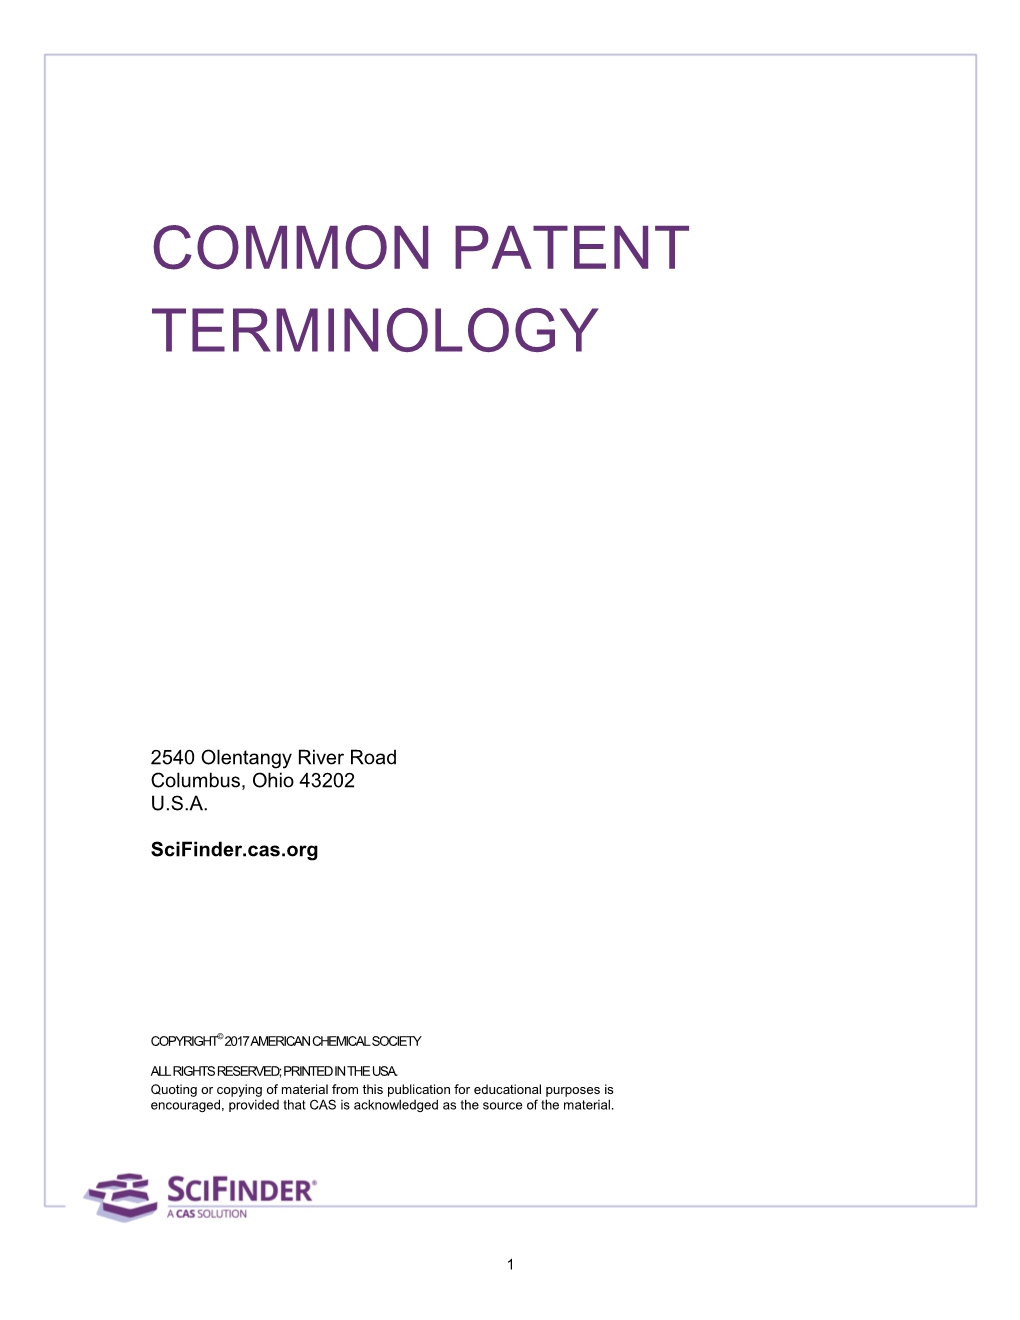 Common Patent Terminology